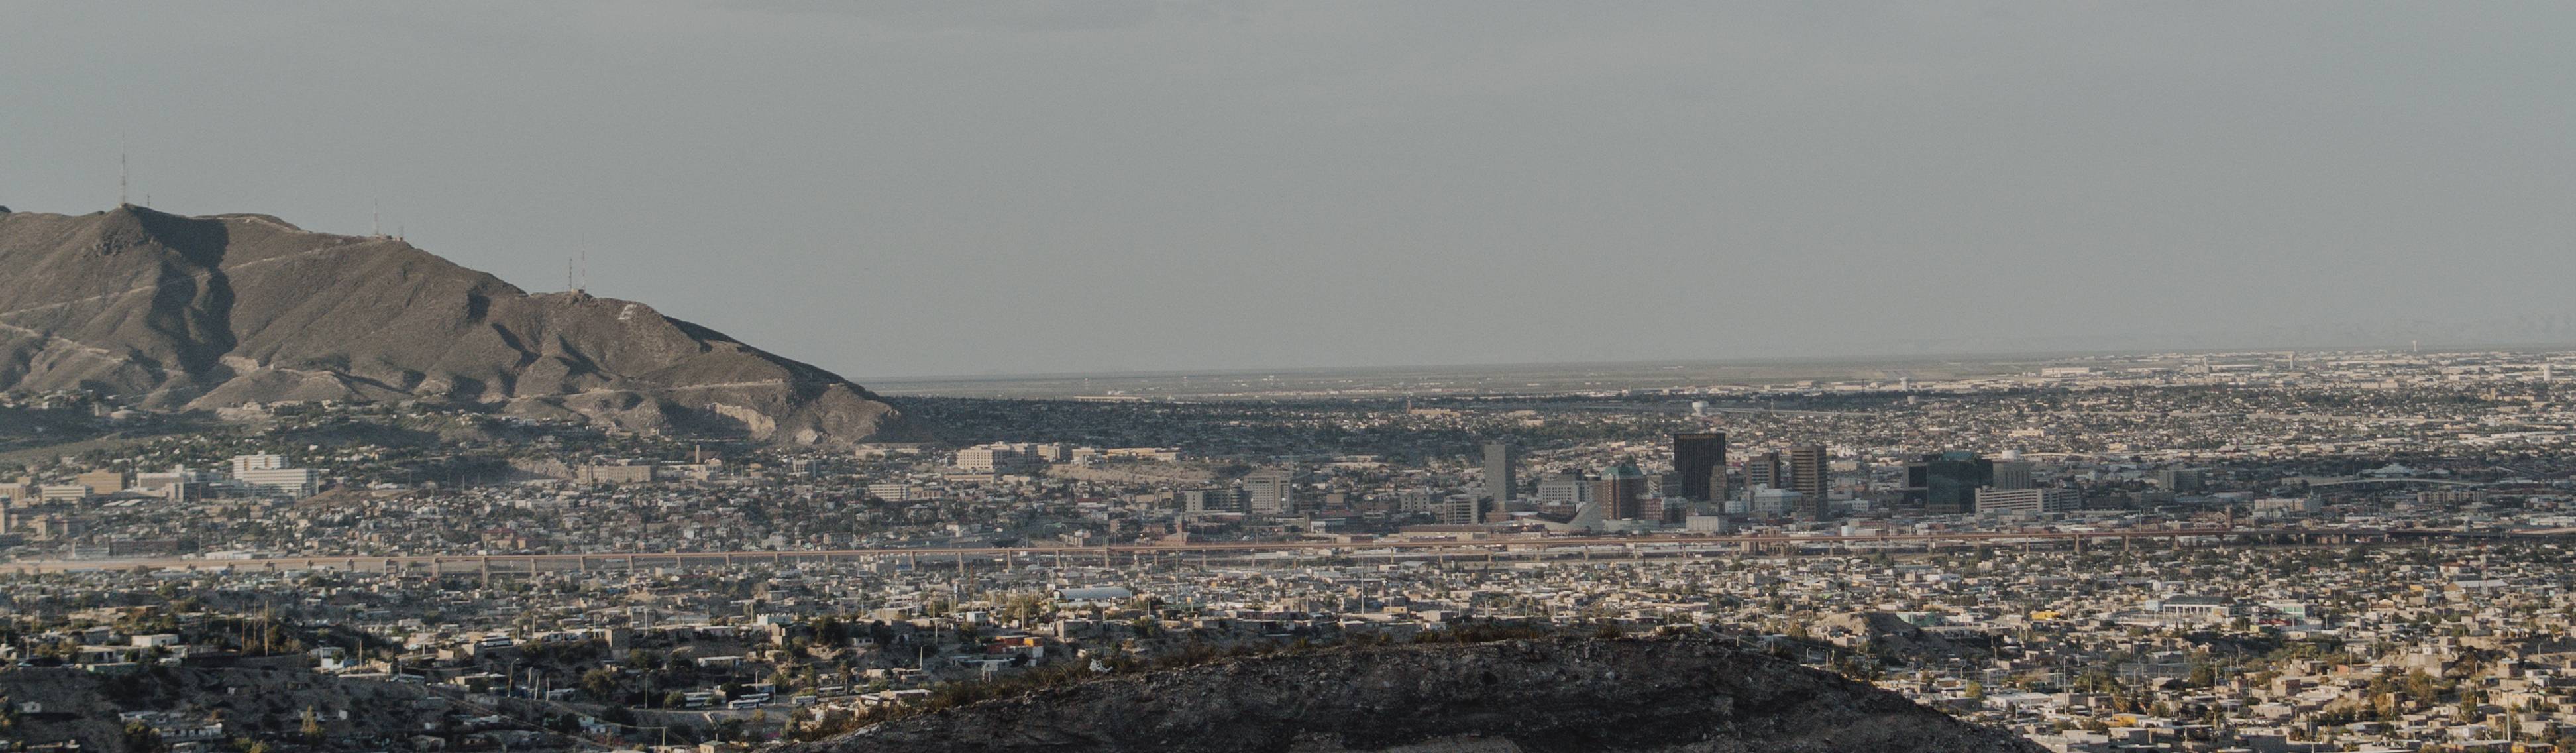 Landscape of El Paso, TX